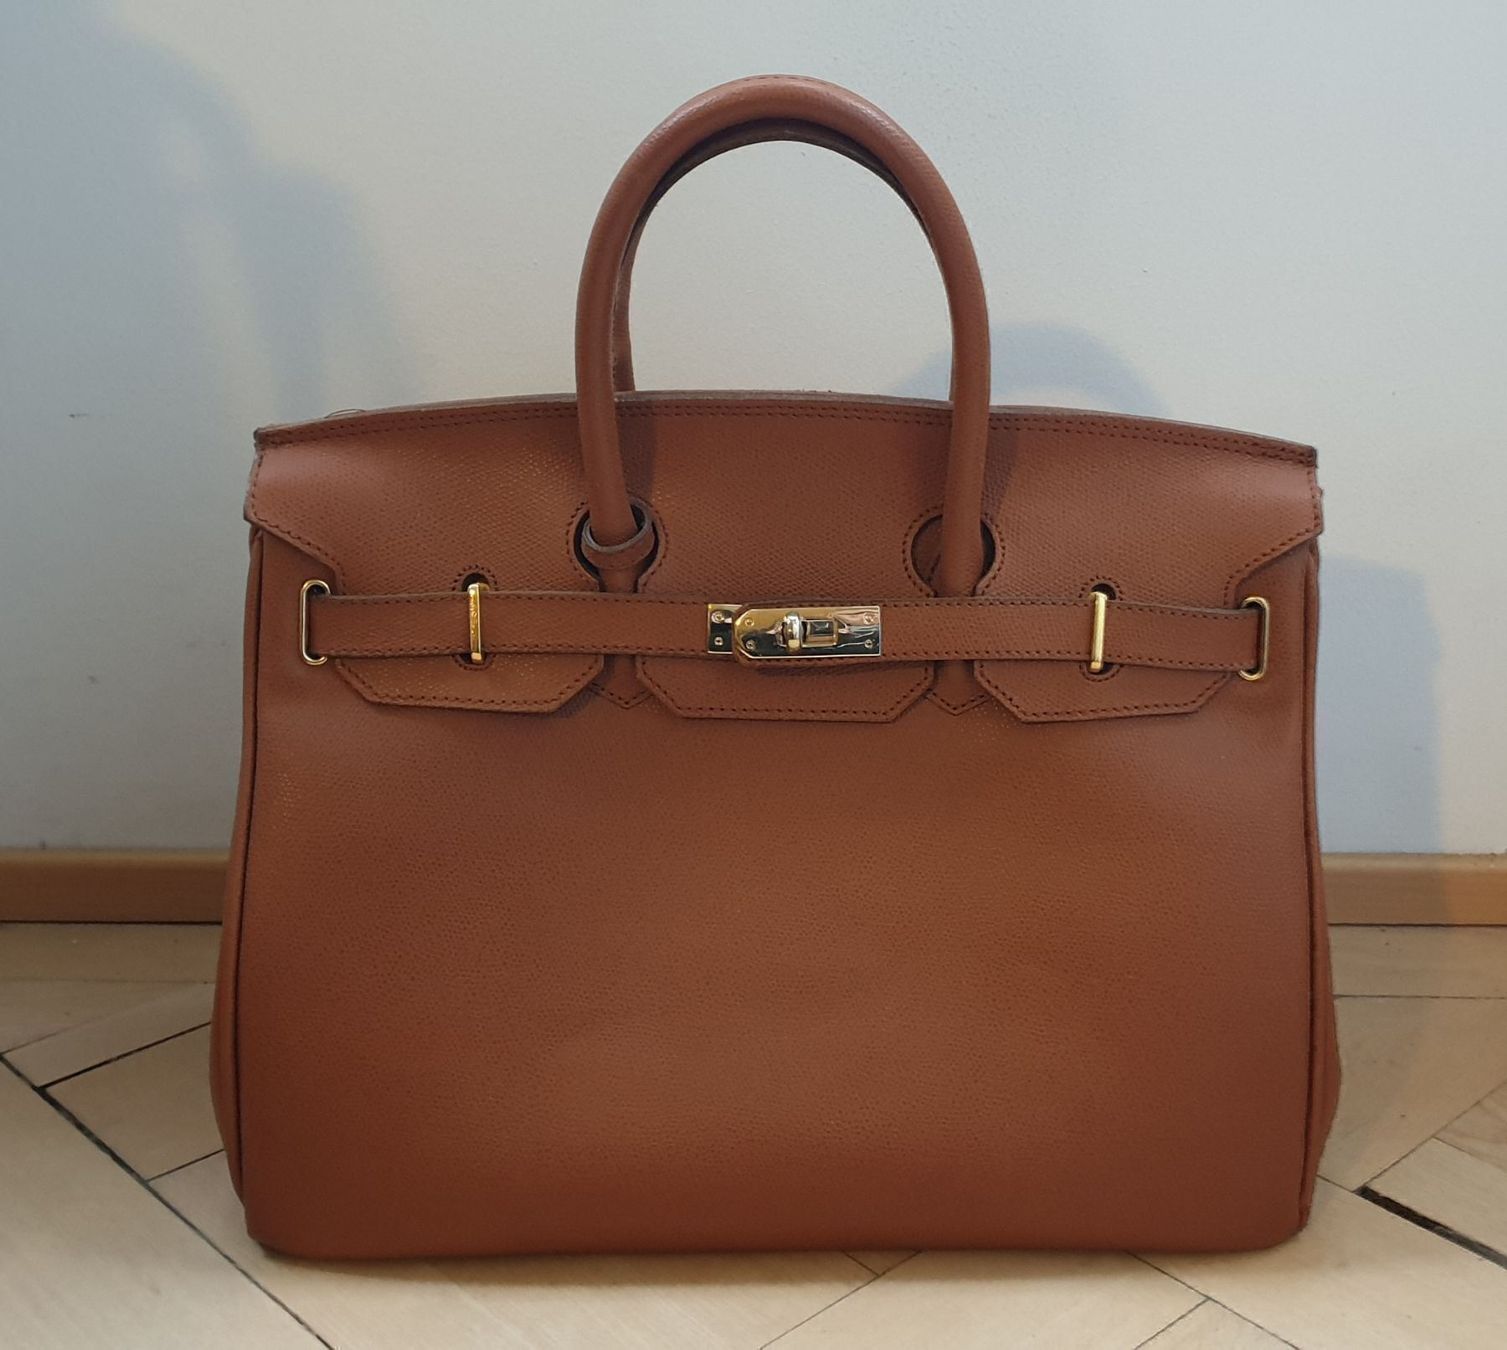 Carbotti Birkin Bag Handtasche kaufen auf Ricardo